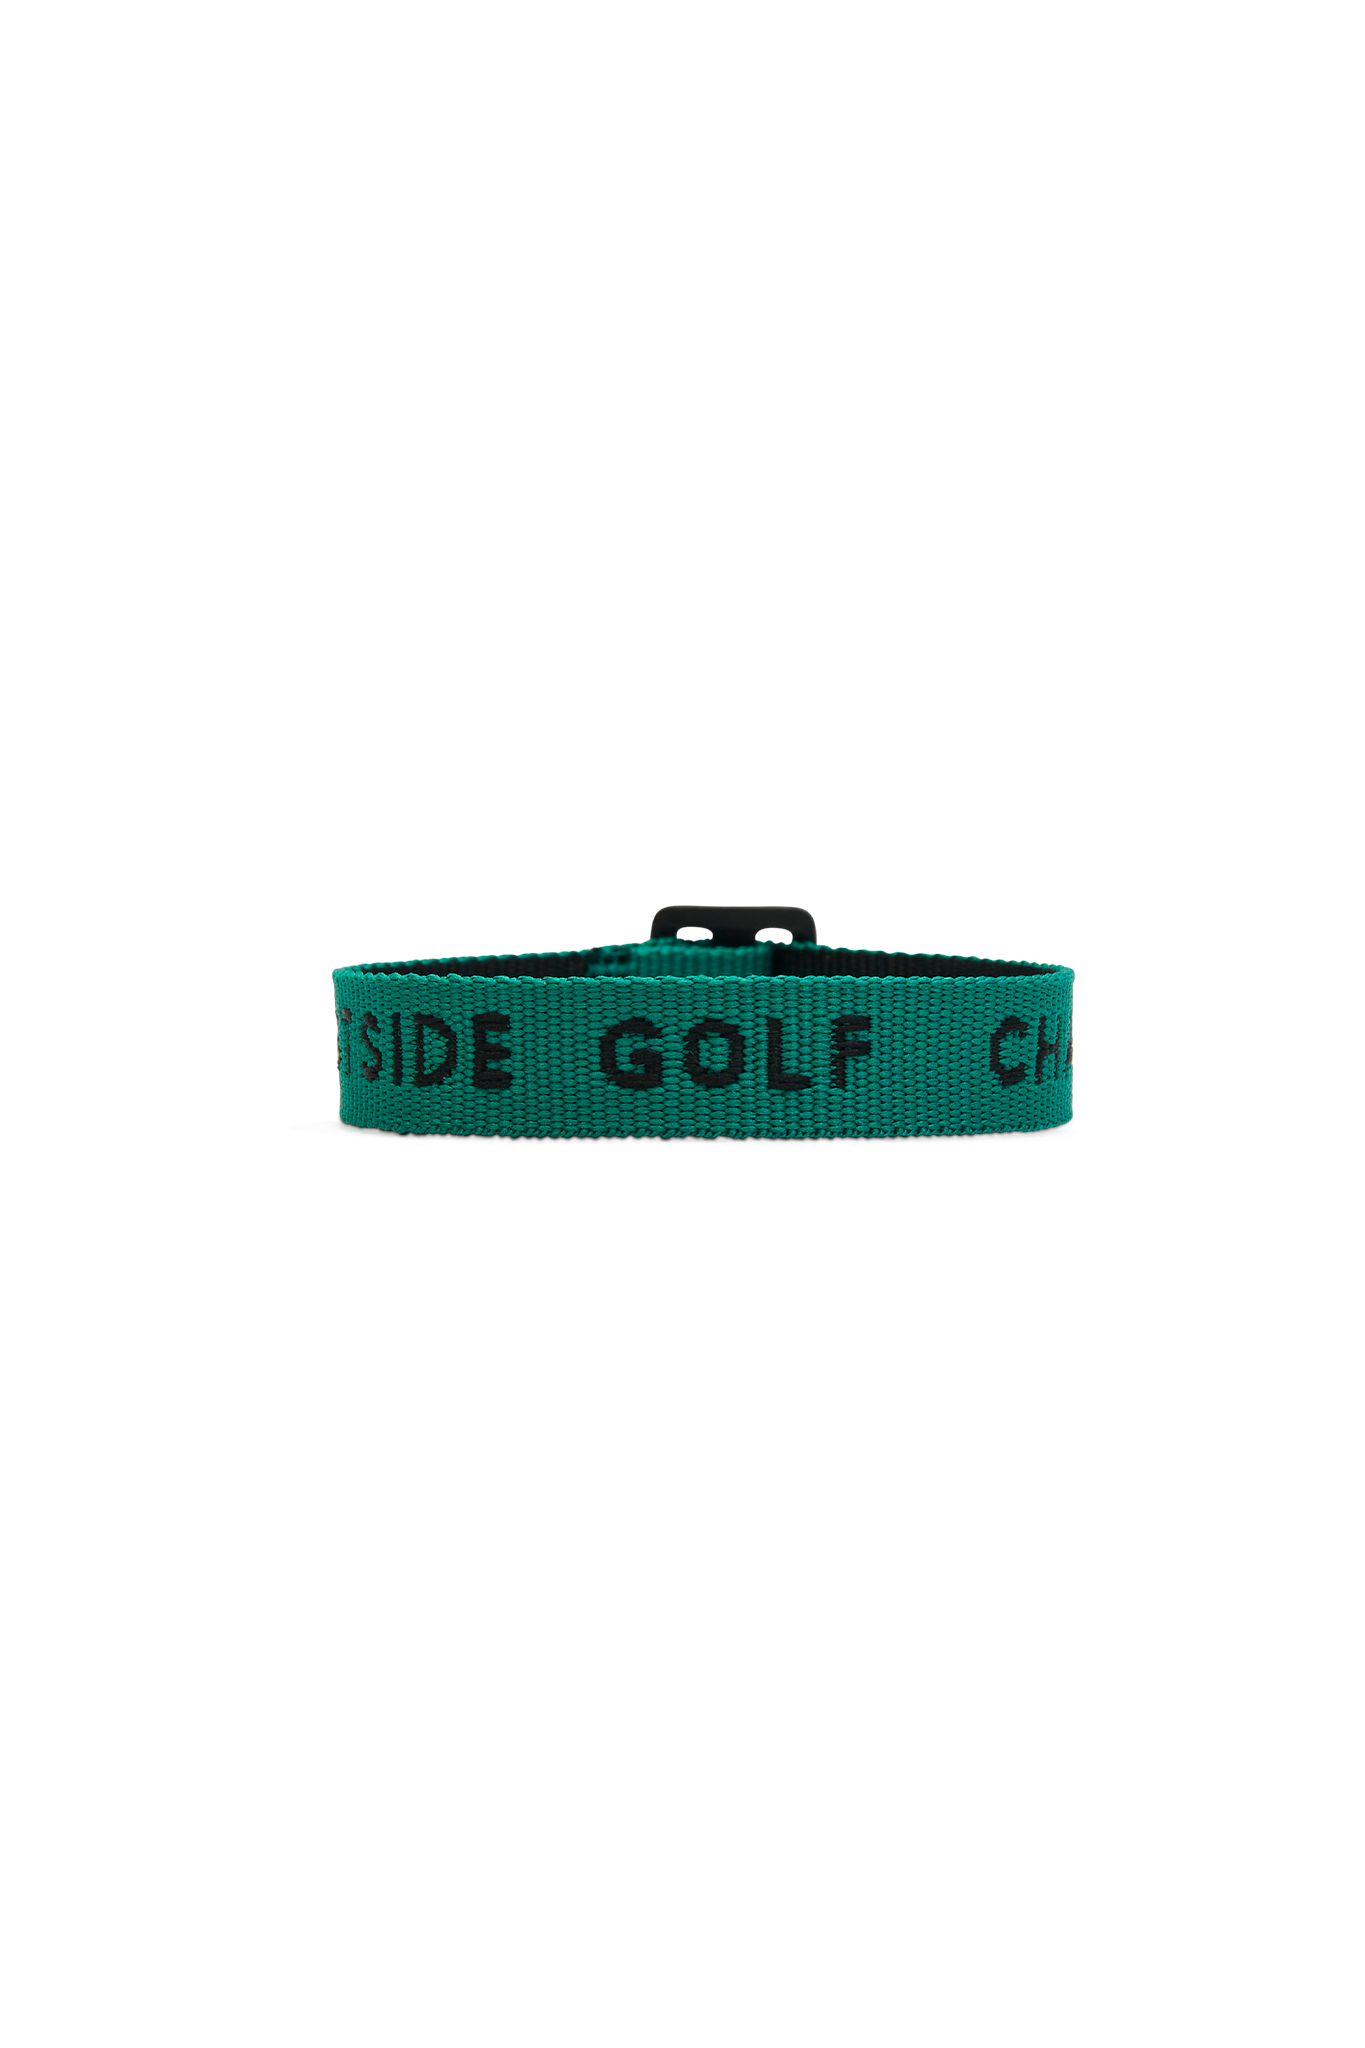 Eastside Golf 1961 Woven Bracelet Black Golf Green